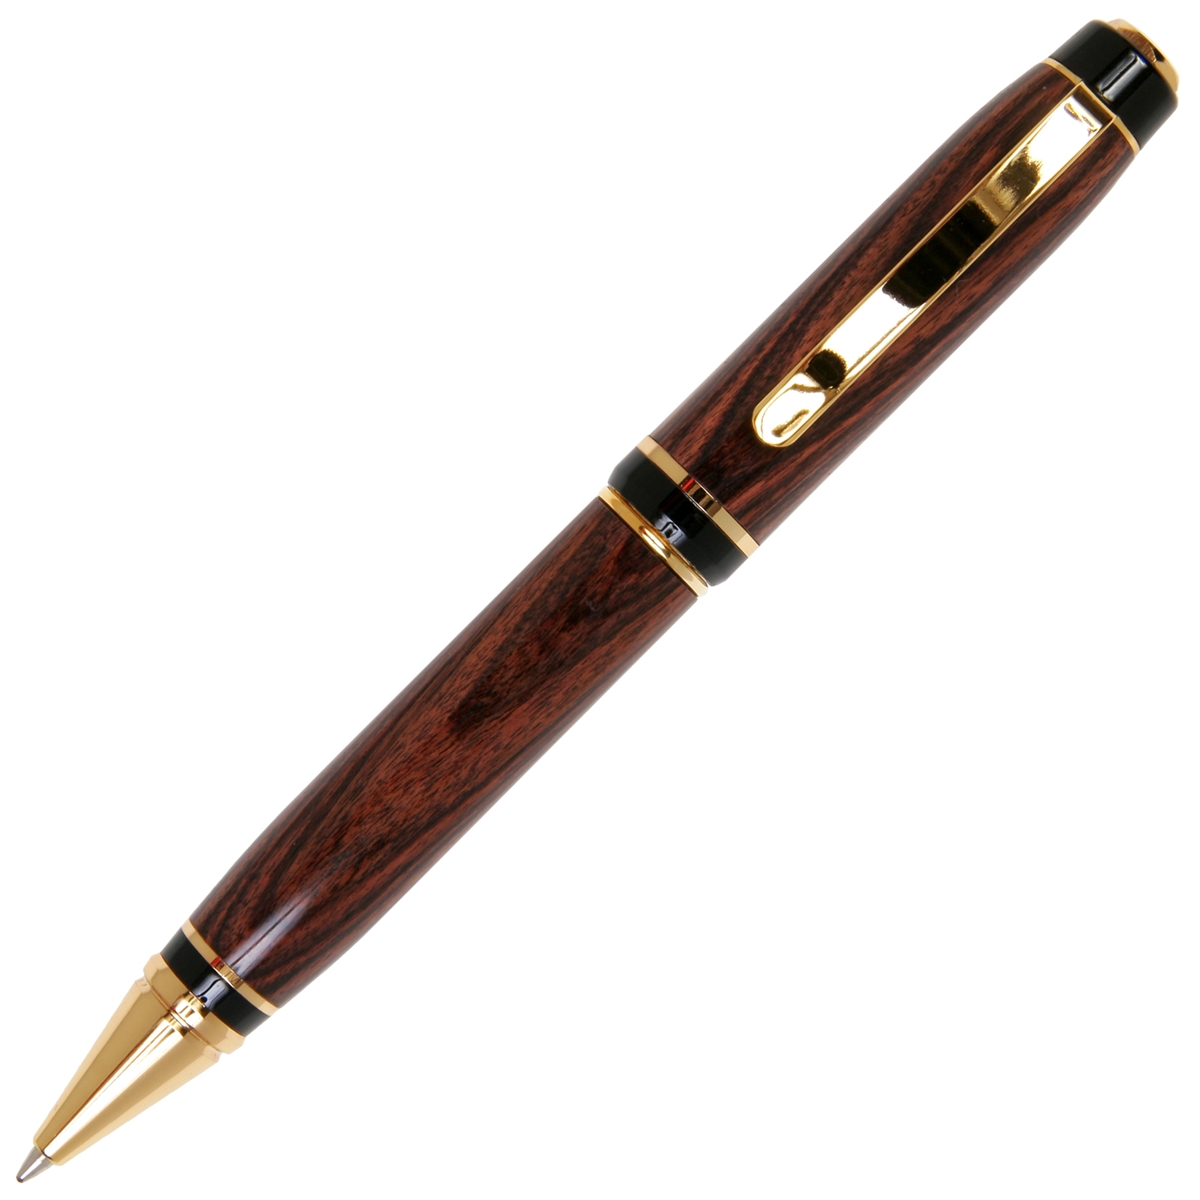 Kingwood Cigar Twist Pen - Lanier Pens